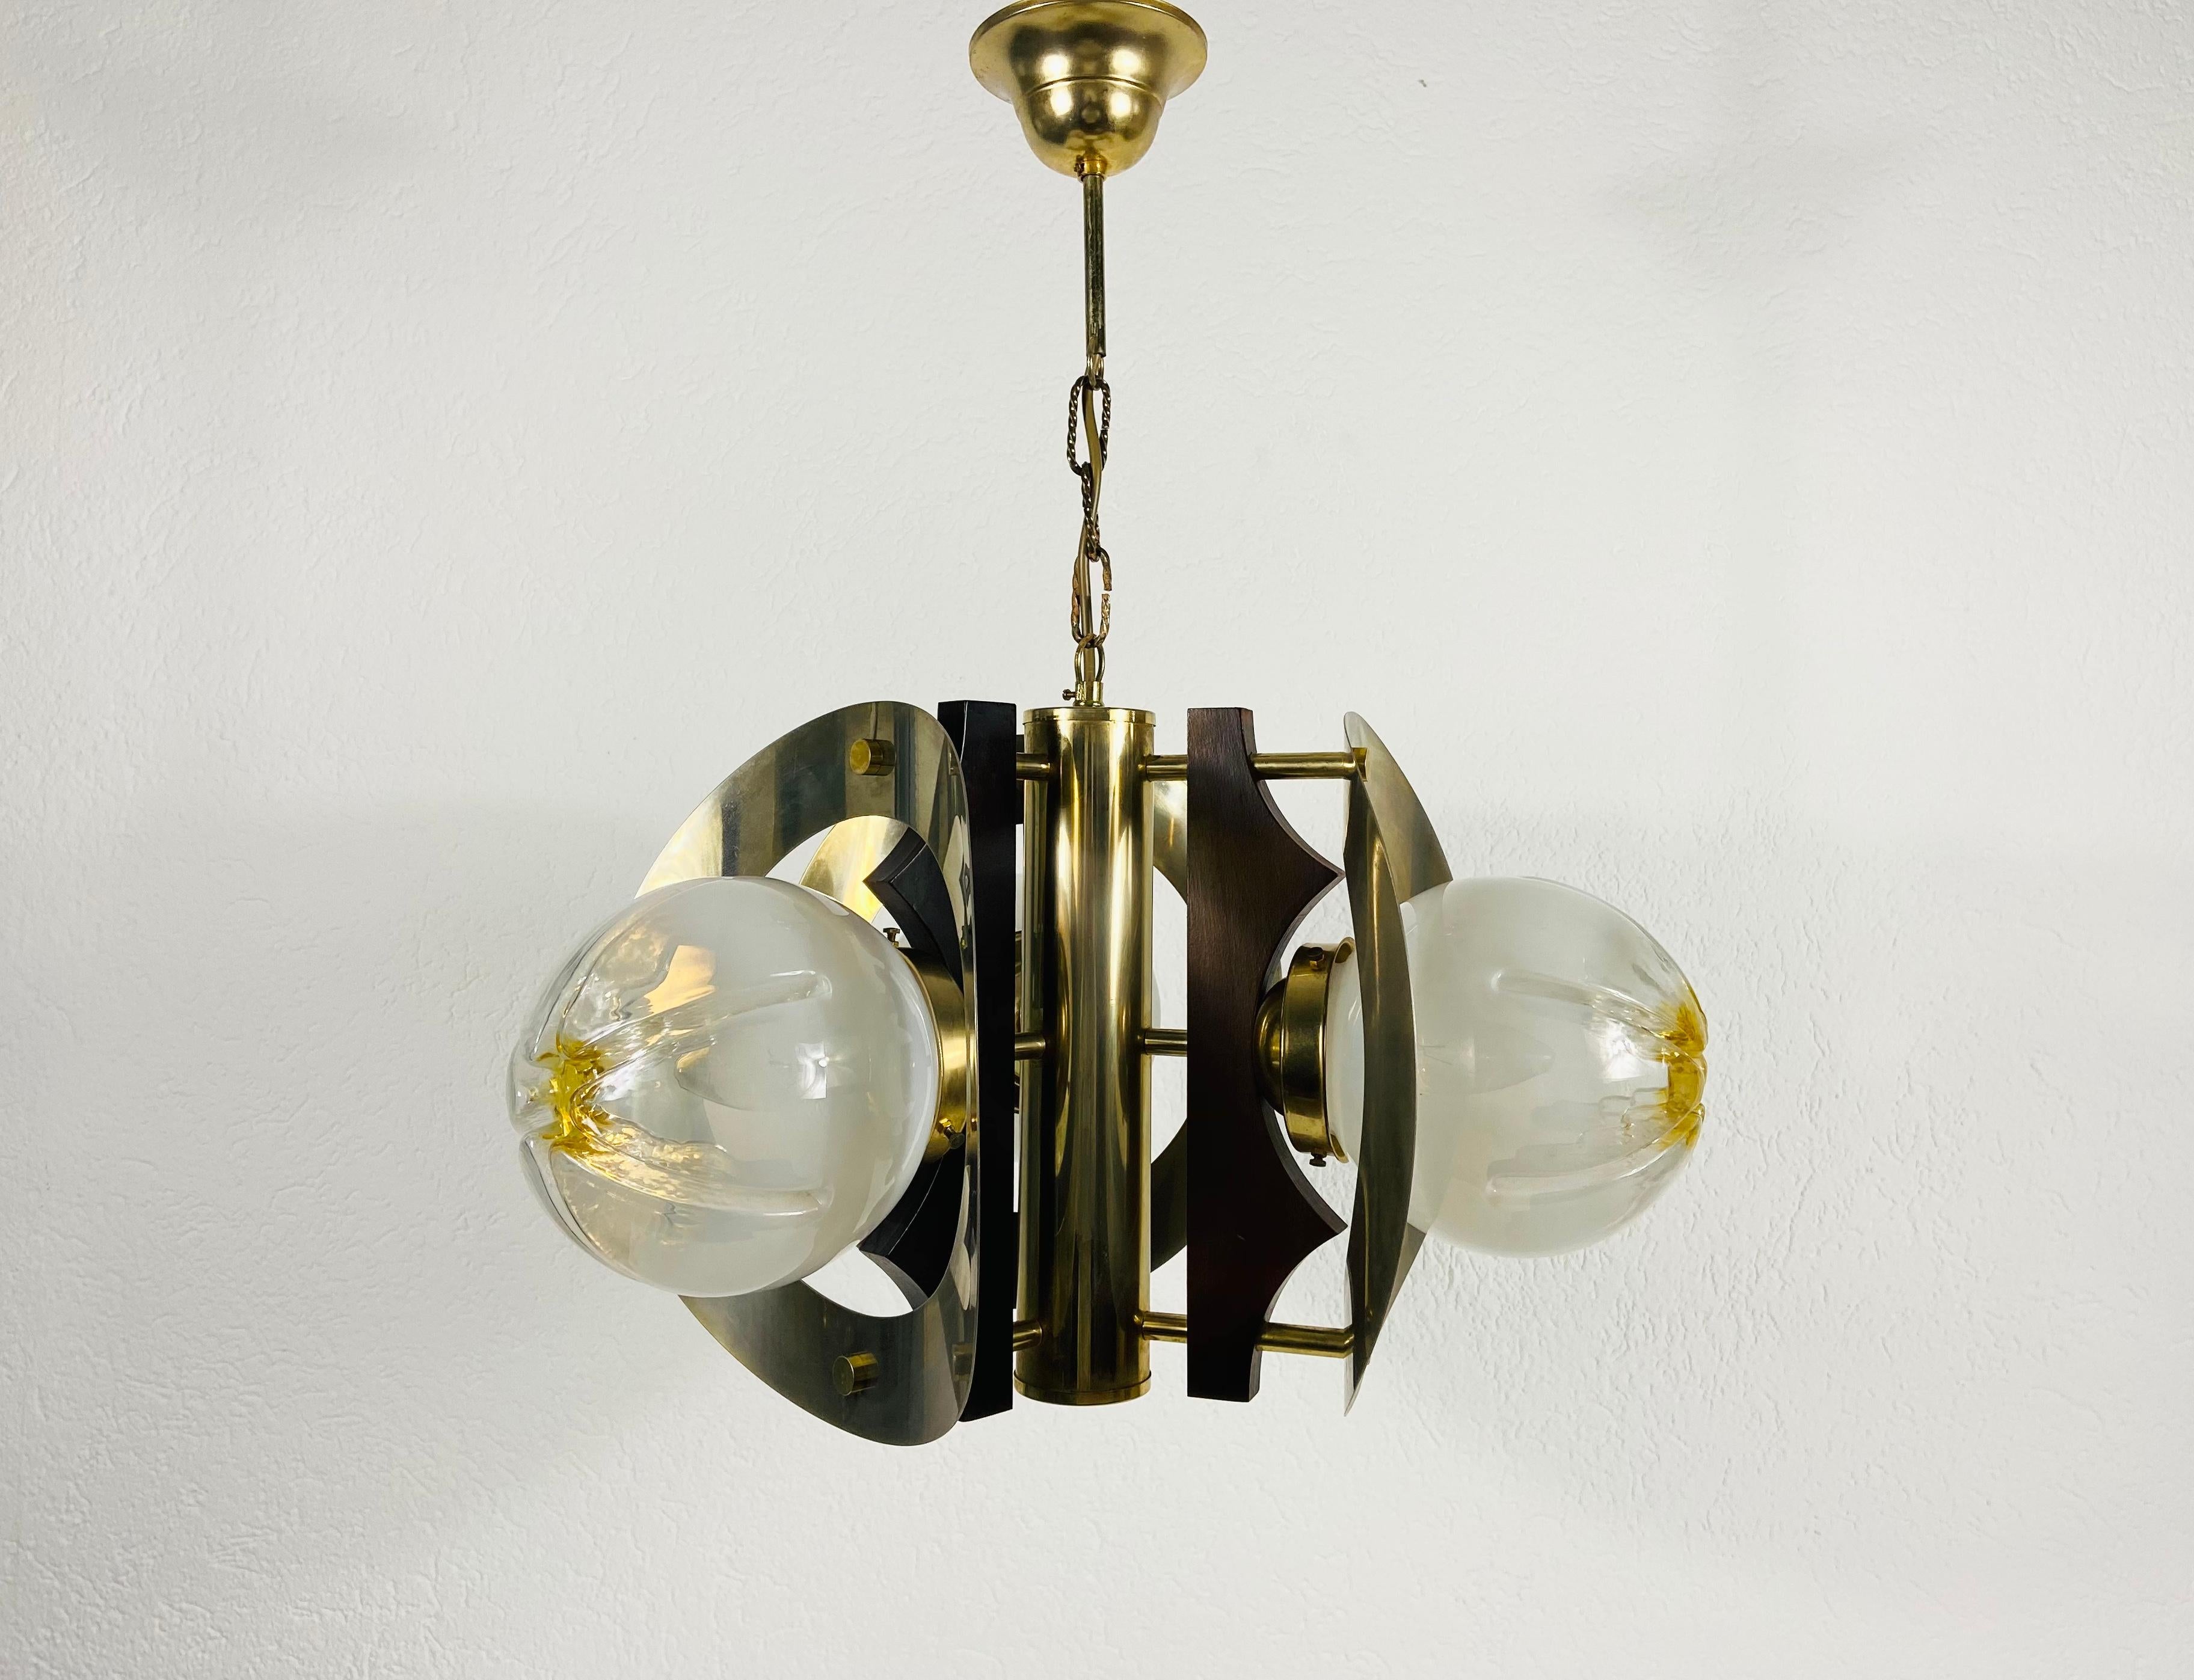 Une belle lampe suspendue en verre de Murano fabriquée en Italie dans les années 1970. Le luminaire est fabriqué en Murano épais. Il a une couleur étonnante et il est très solide. Les trois parties en verre sont fixées au corps en aluminium.

Le